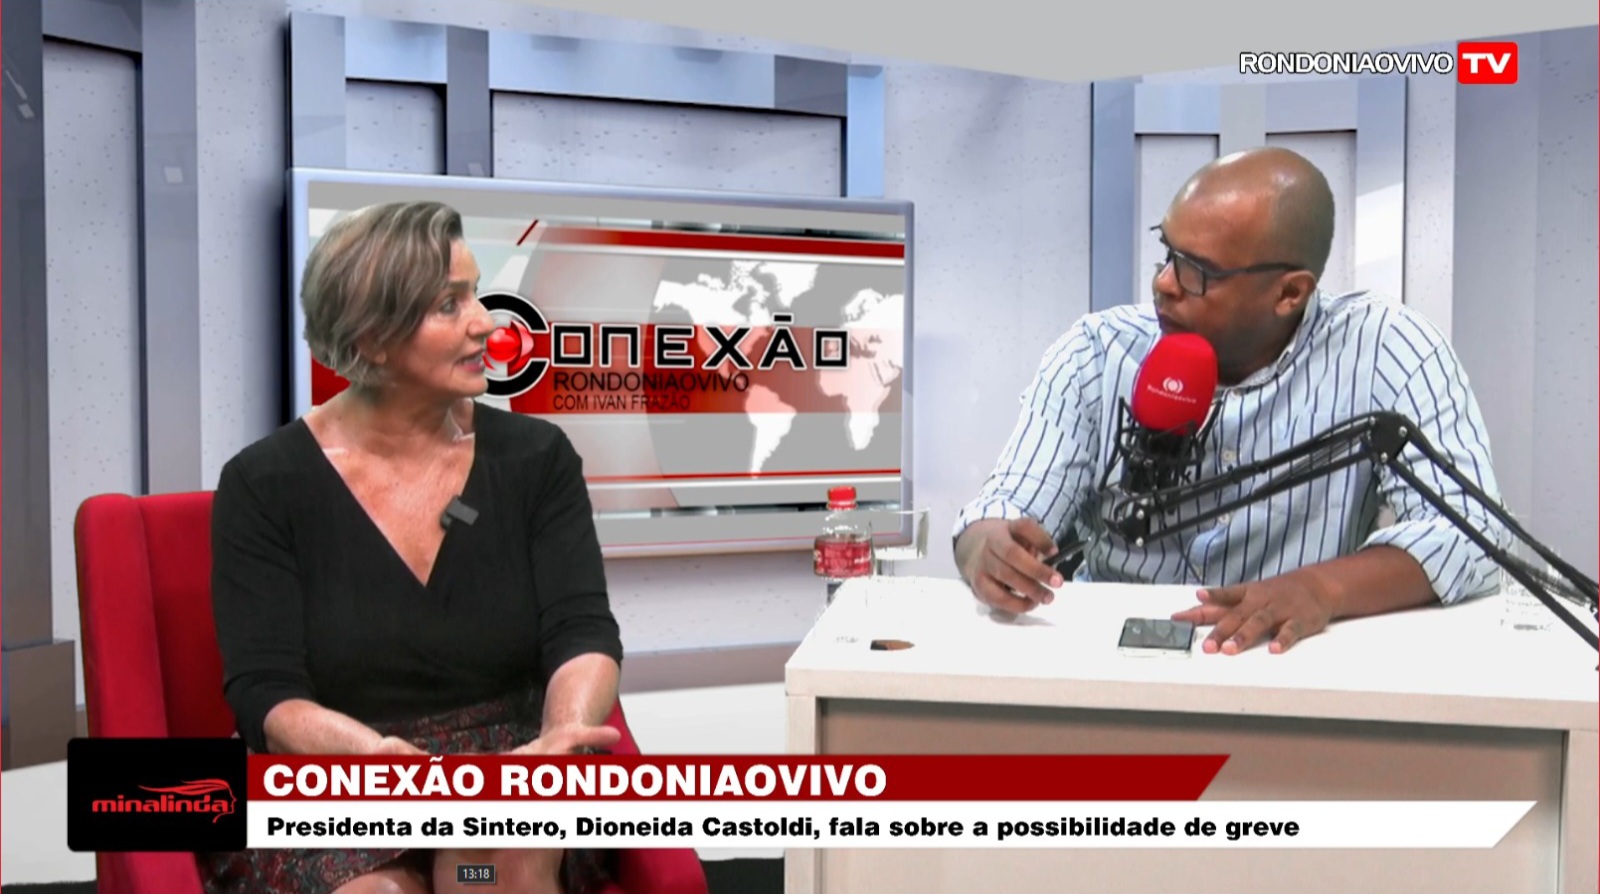 CONEXÃO RONDONIAOVIVO:   Presidenta da Sintero, Dioneida Castoldi, fala sobre a possibilidade de greve